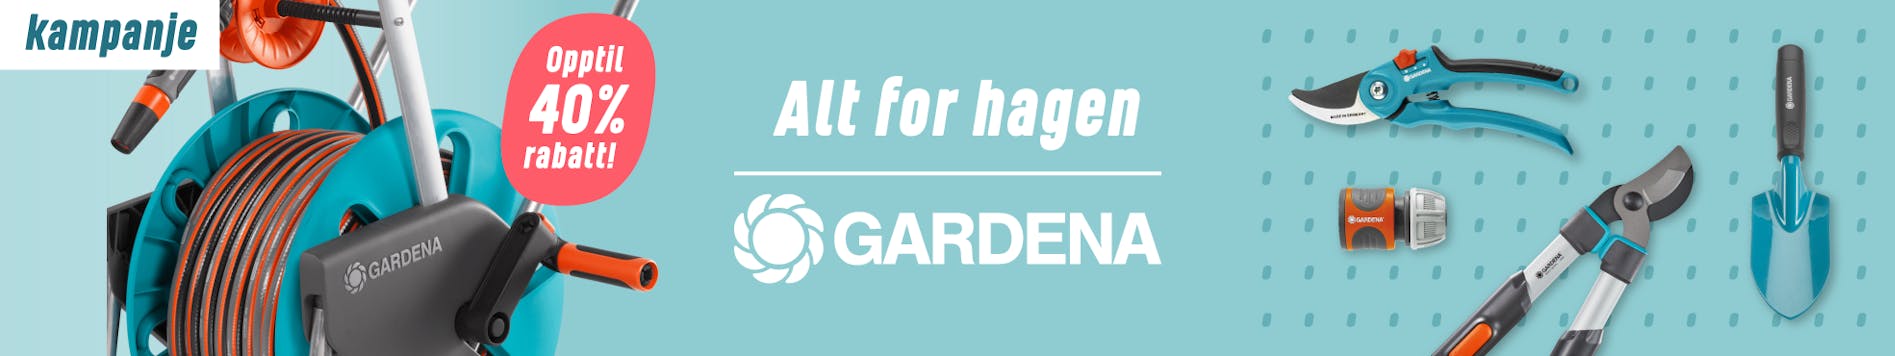 https://www.staypro.no/gardena-kampanje